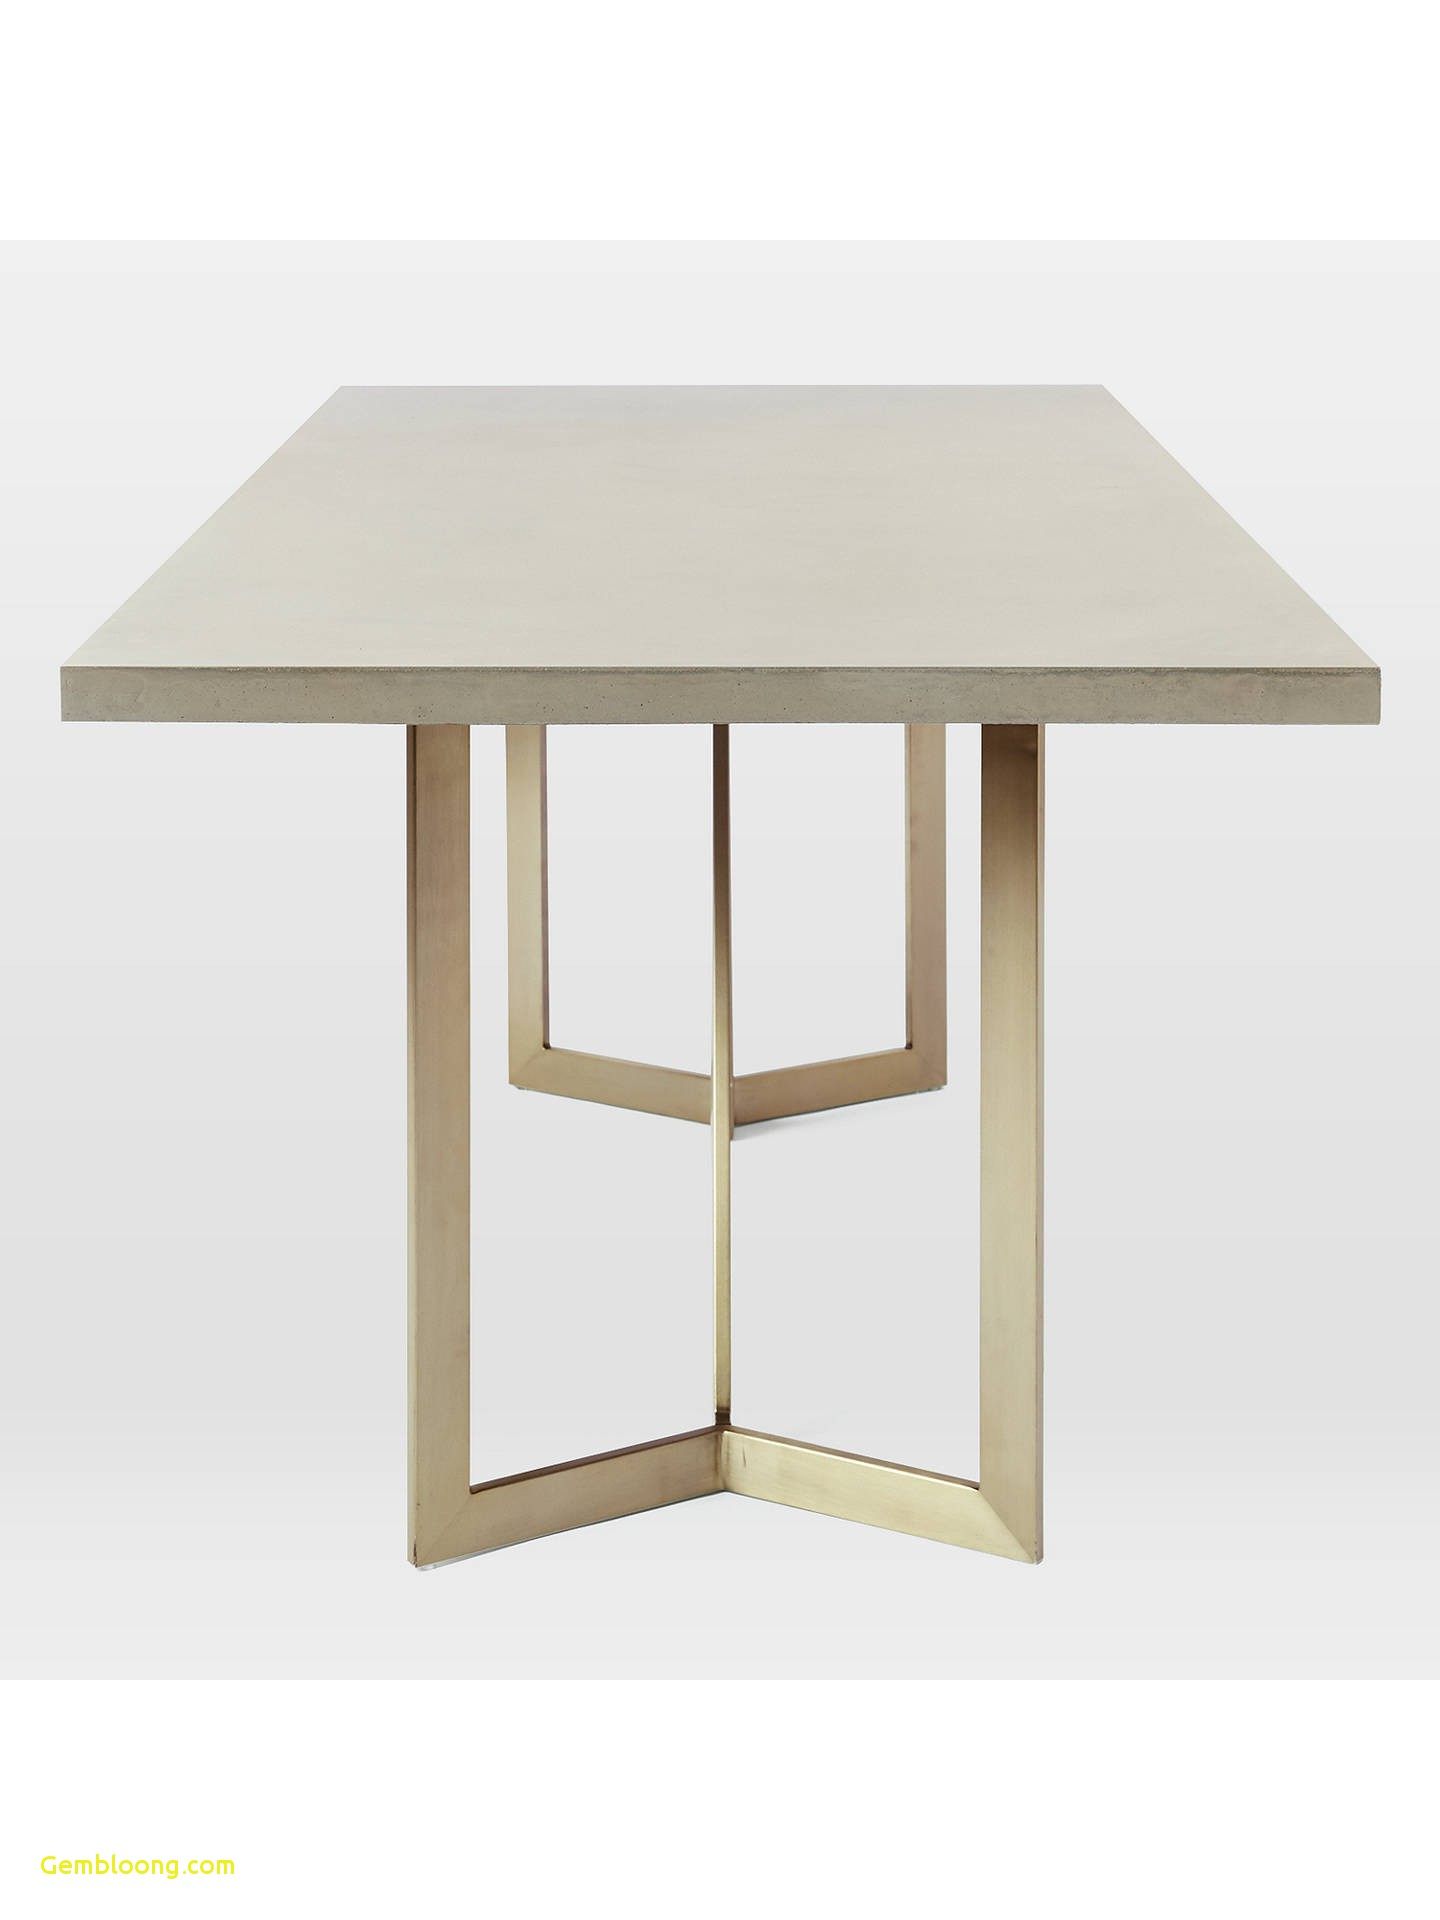 Origami Coffee Table West Elm Elegant West Elm Origami Coffee Table Coffee Table Design Ideas